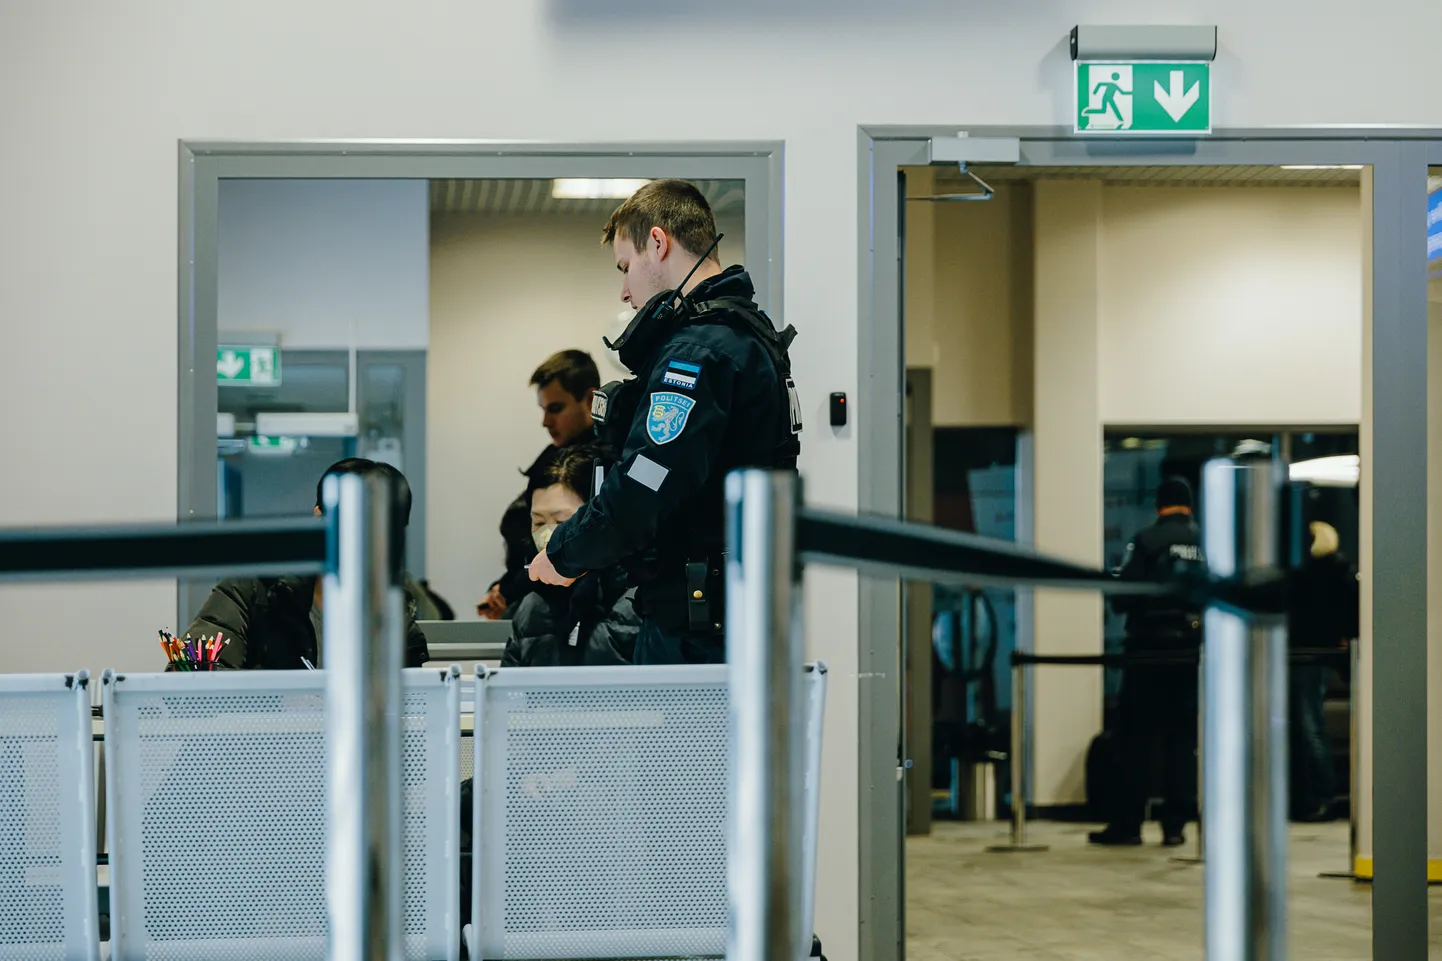 Alates 2022. aasta sügisest kehtib Venemaa kodanikele Eestisse sisenemise keeld isegi siis, kui neil on viisa. Erandid kehtivad vaid lähisugulaste külastamise puhul, aga ka siis tuleb seda piiril veenvalt tõendada.